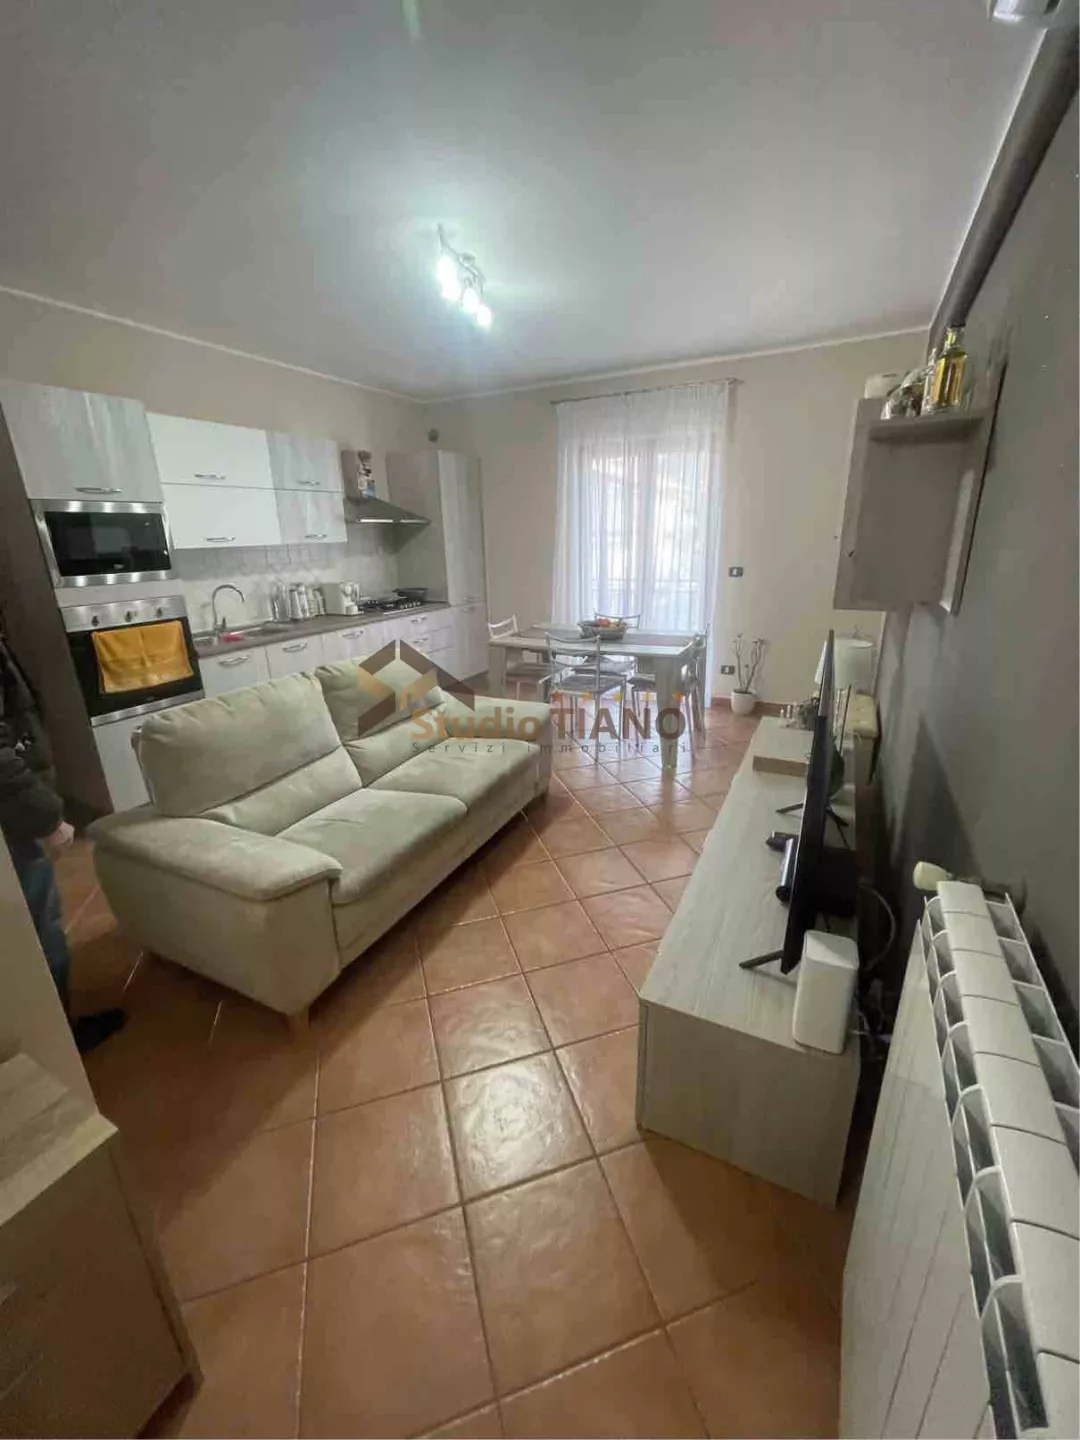 Immagine per Appartamento in vendita a Belvedere Marittimo VIA GIUSEPPE FIORILLO